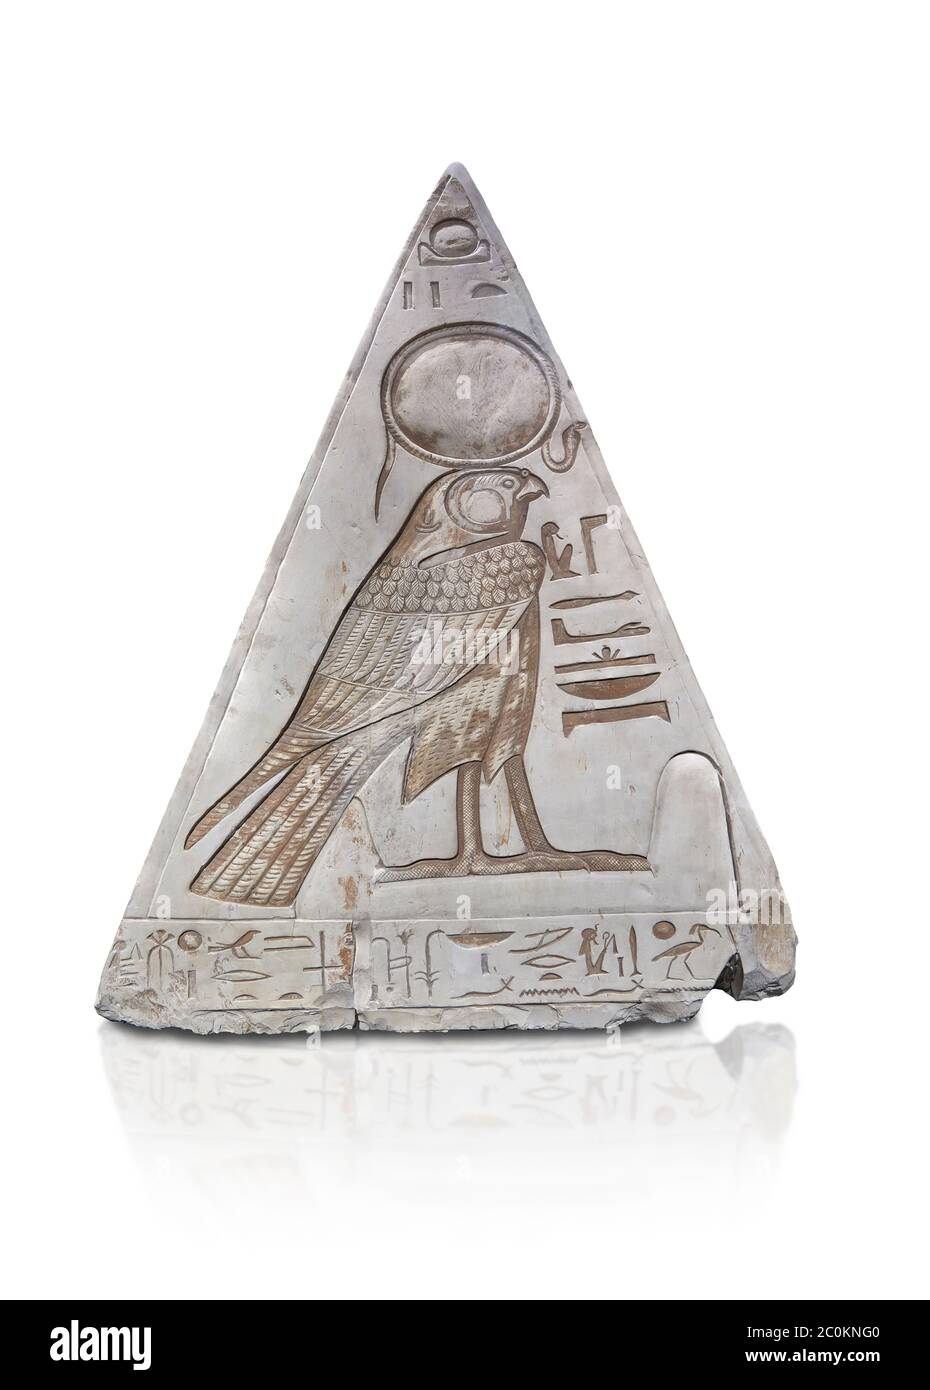 Face sud de l'ancien Pyramidion égyptien de Ramose avec la représentation de Horus, Limestone, Nouveau Royaume, 19e Dtaminent (1292-1190 av. J.-C.), Dier el-Medina. Égypte Banque D'Images